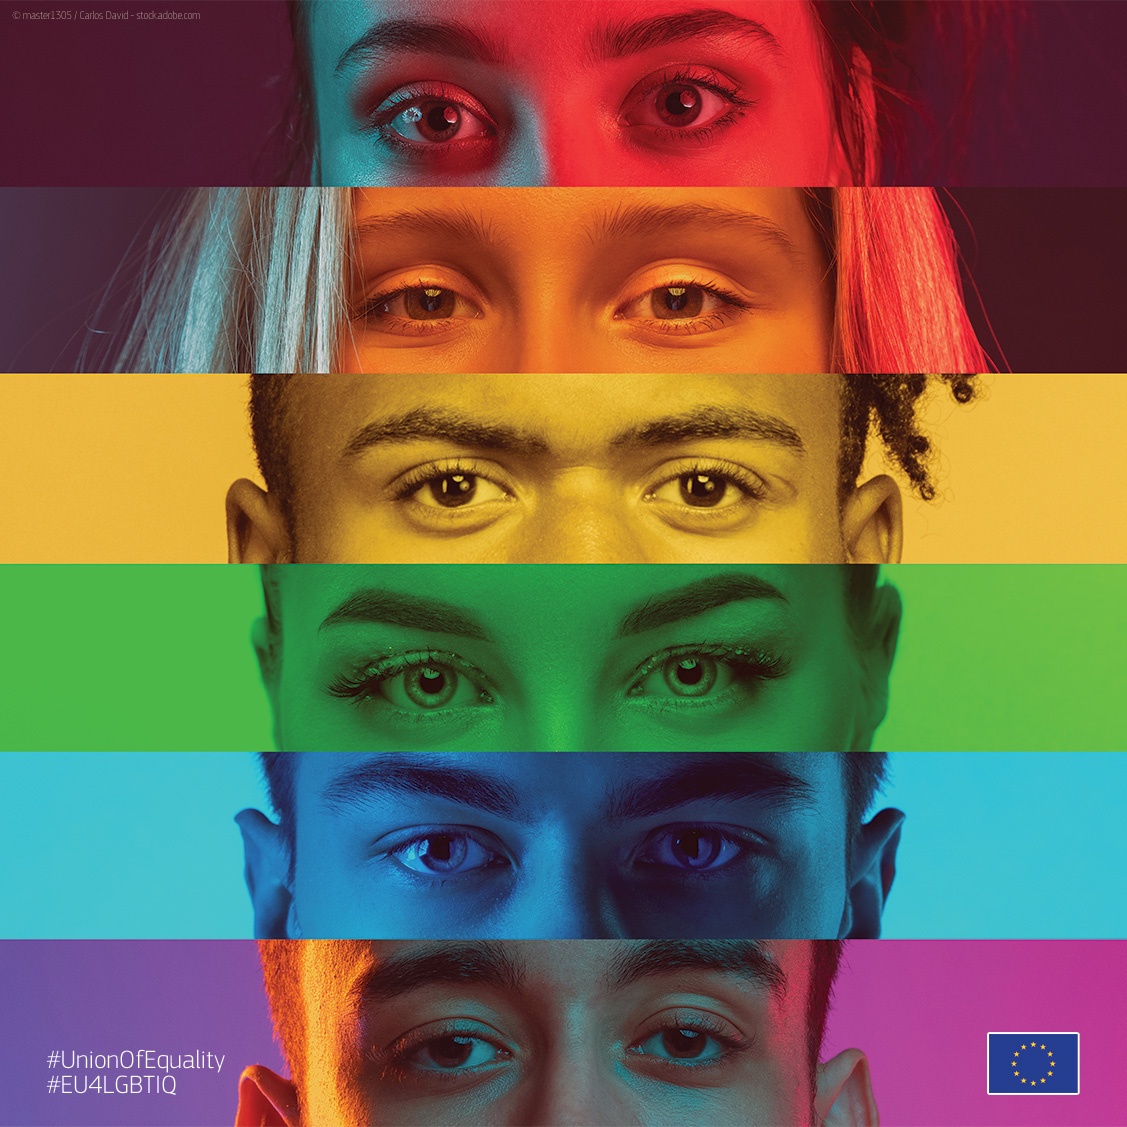 ЕС е съюз на равенството, където всеки има правото да се чувства сигурен и свободен да бъде себе си. #IDAHOT е повод да напомним, че омразата, насилието, предразсъдъците и ограниченията на основата на сексуална ориентация и полова идентичност нямат място в нашето общество.